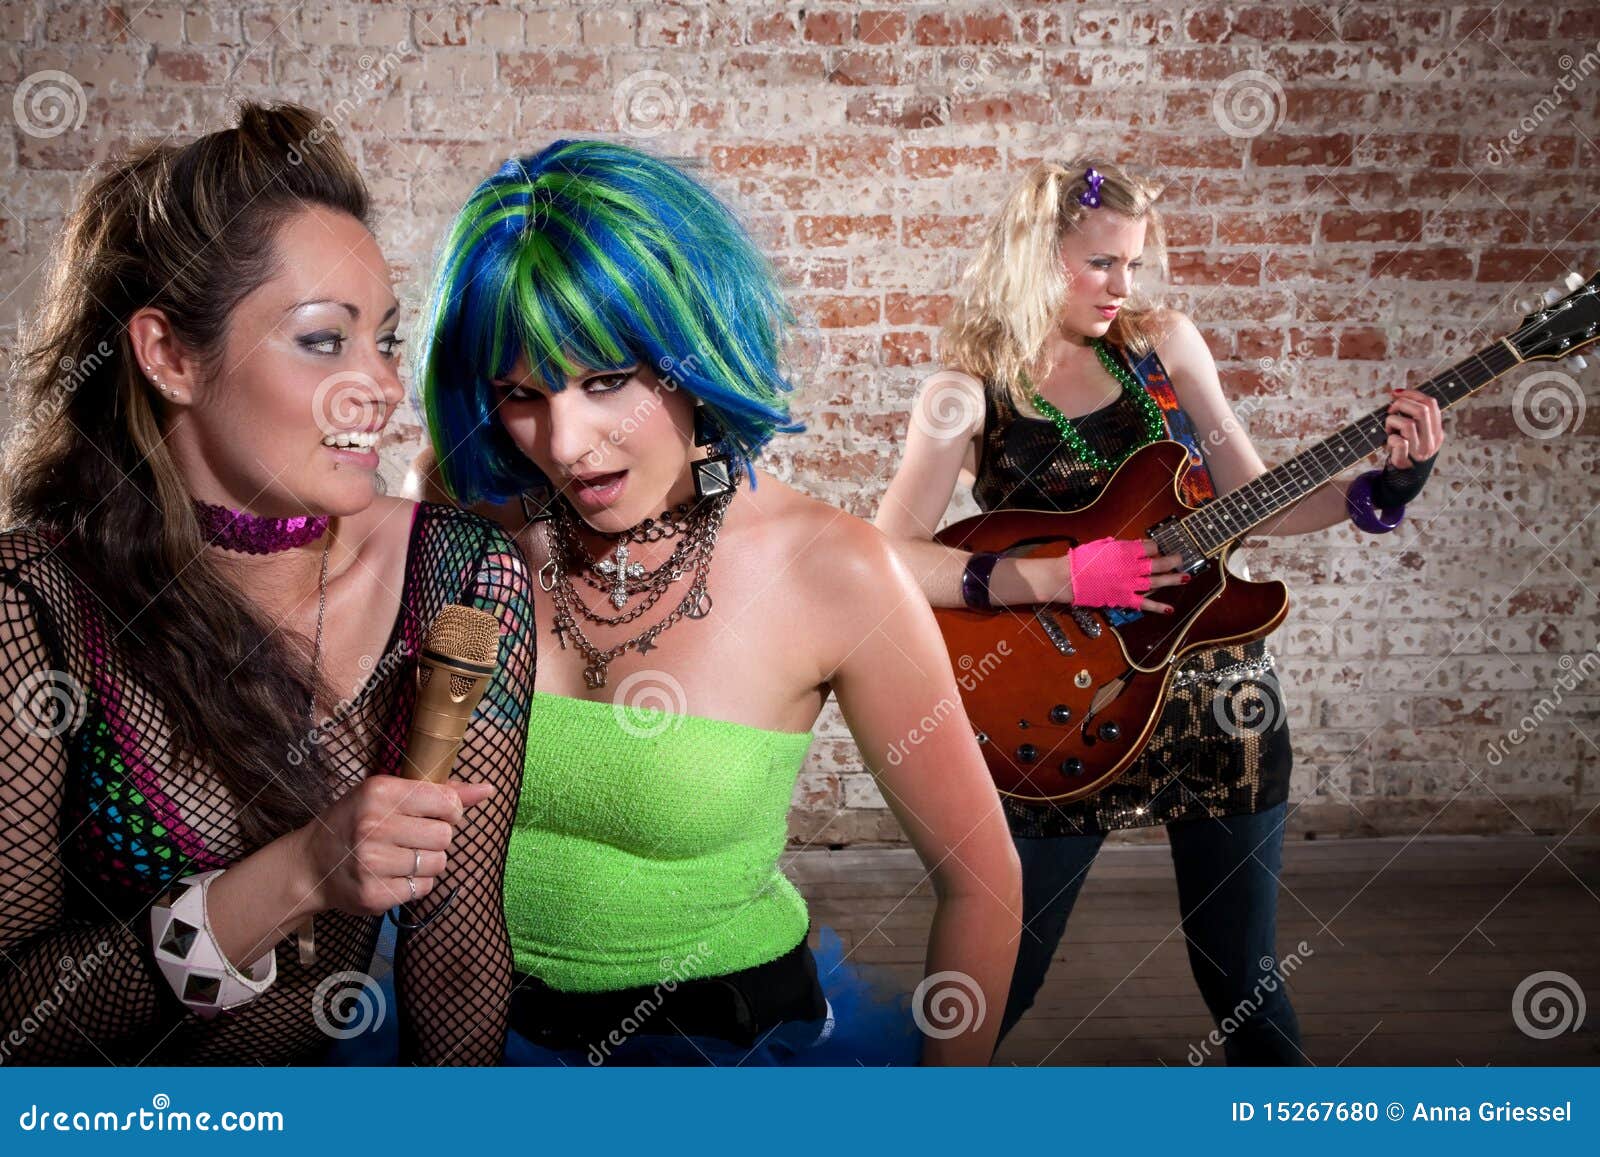 Female Punk Rock Band Stock Photo Image Of Glam Girls 15267680